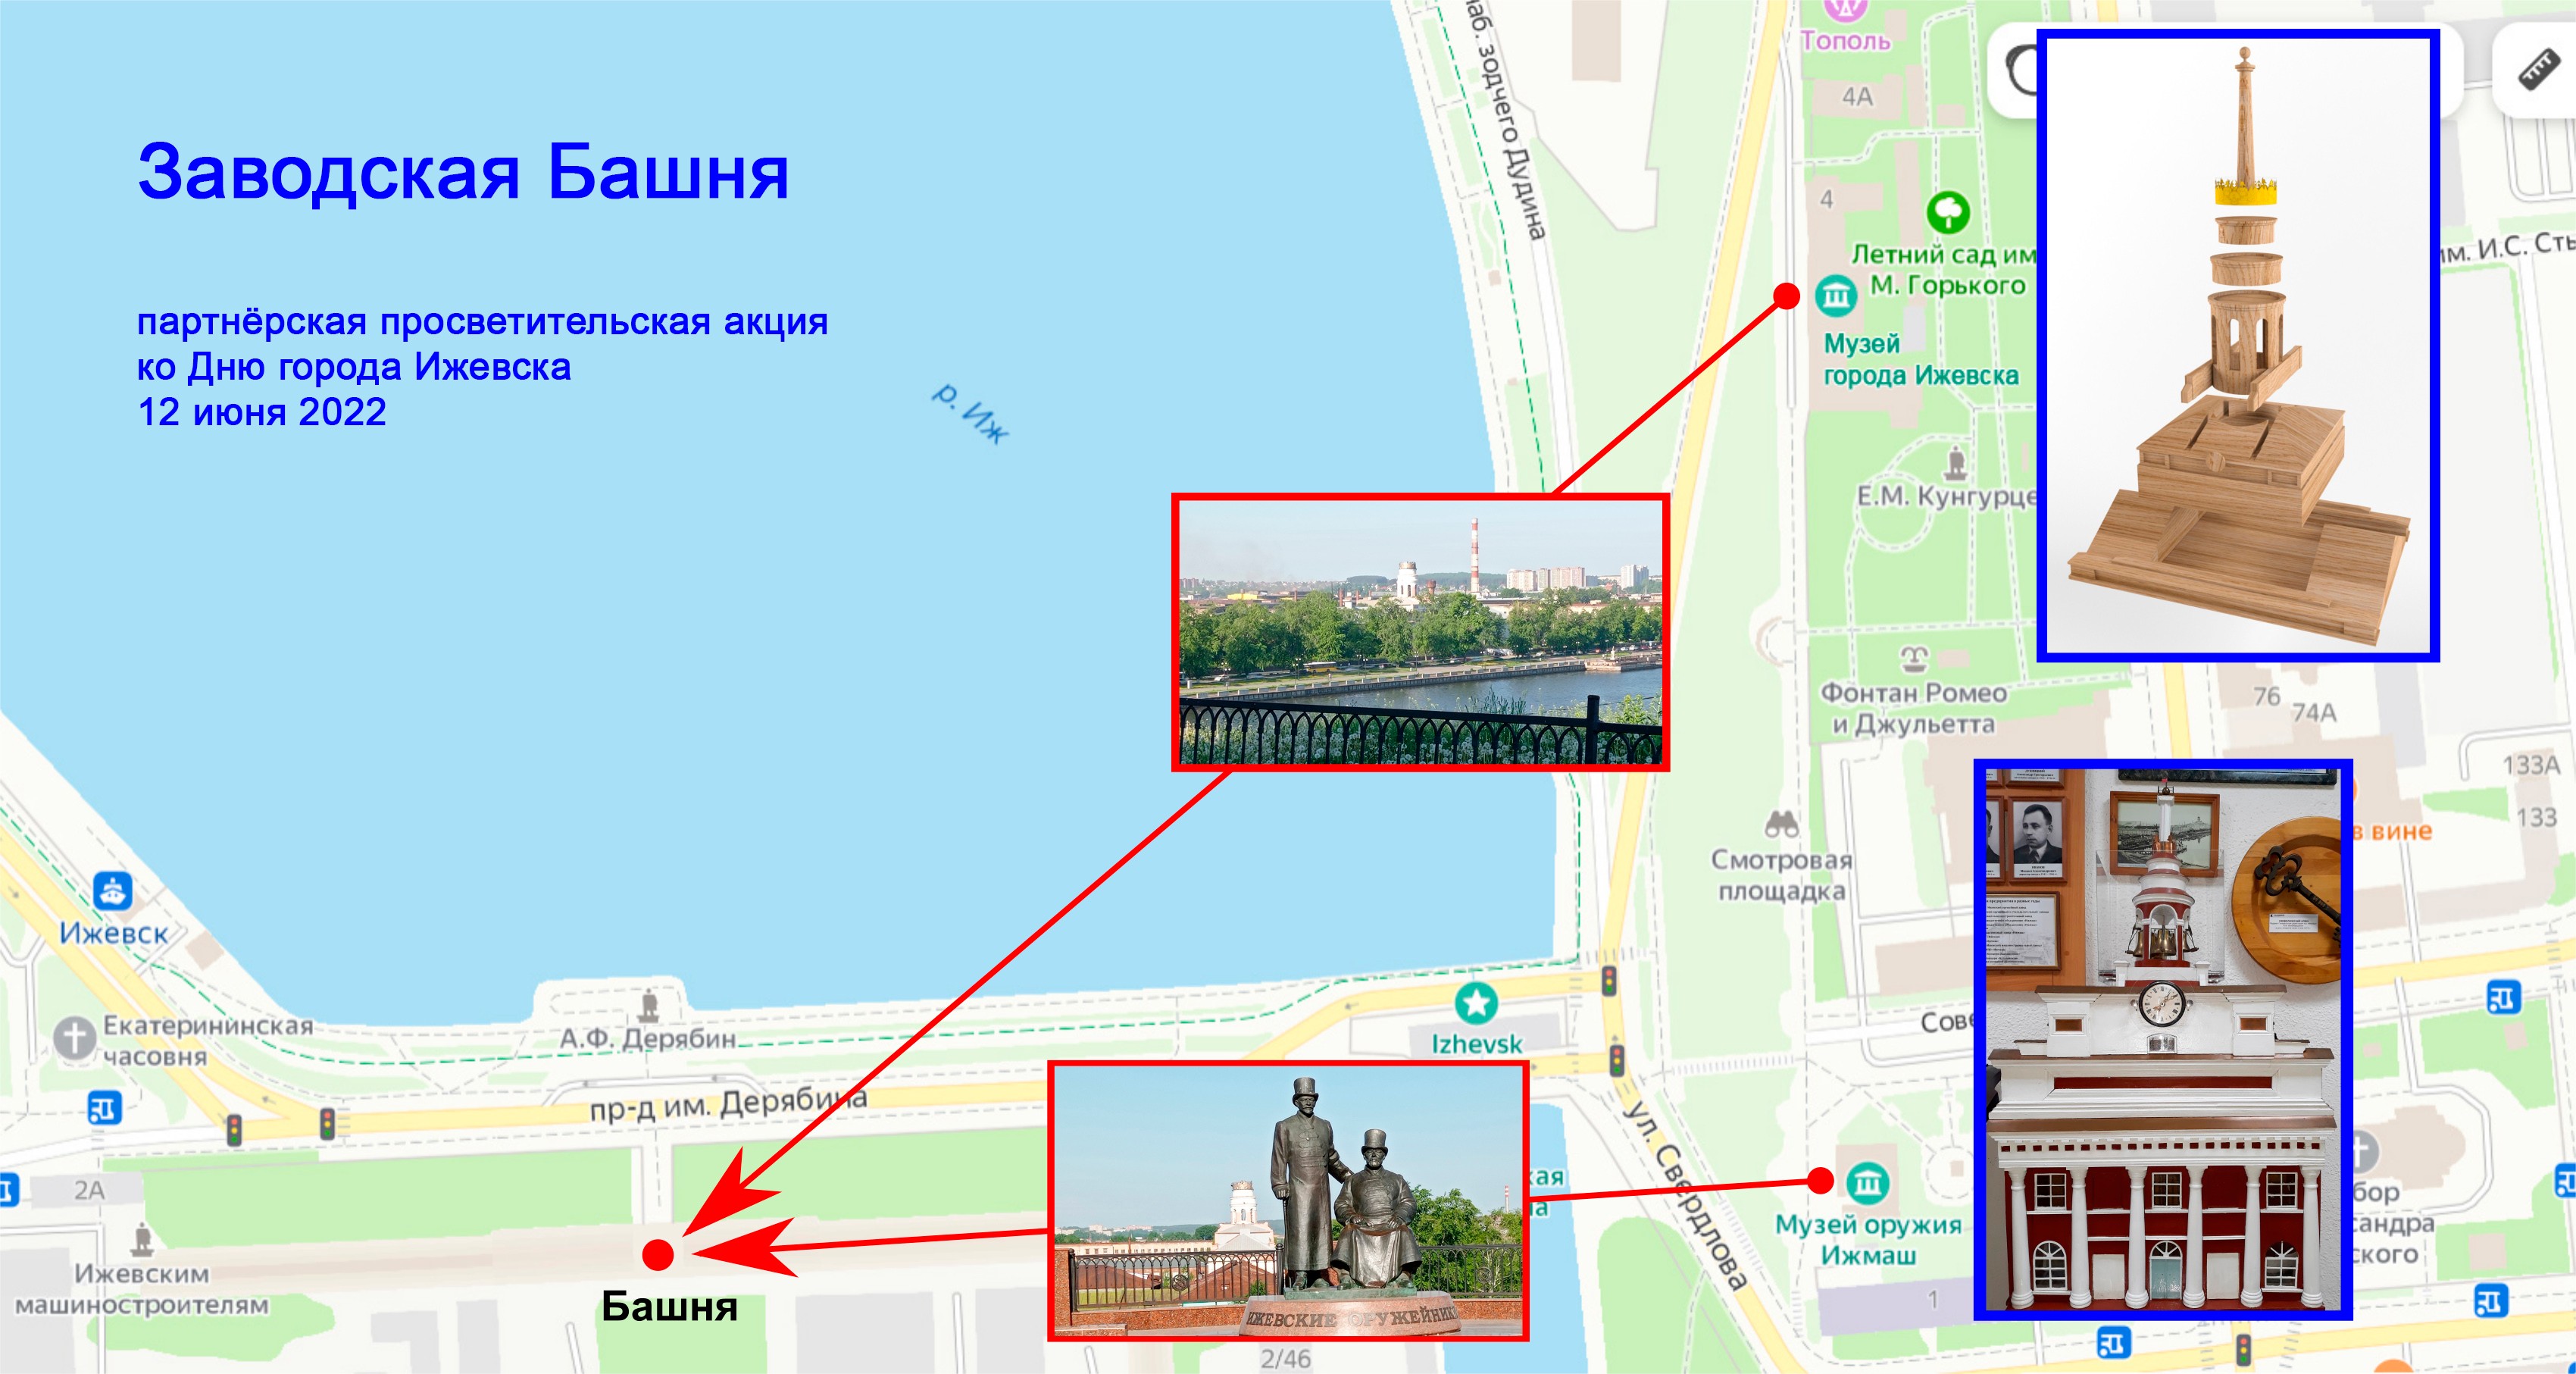 разборная модель Заводской башни Главного корпуса Ижевского оружейного завода